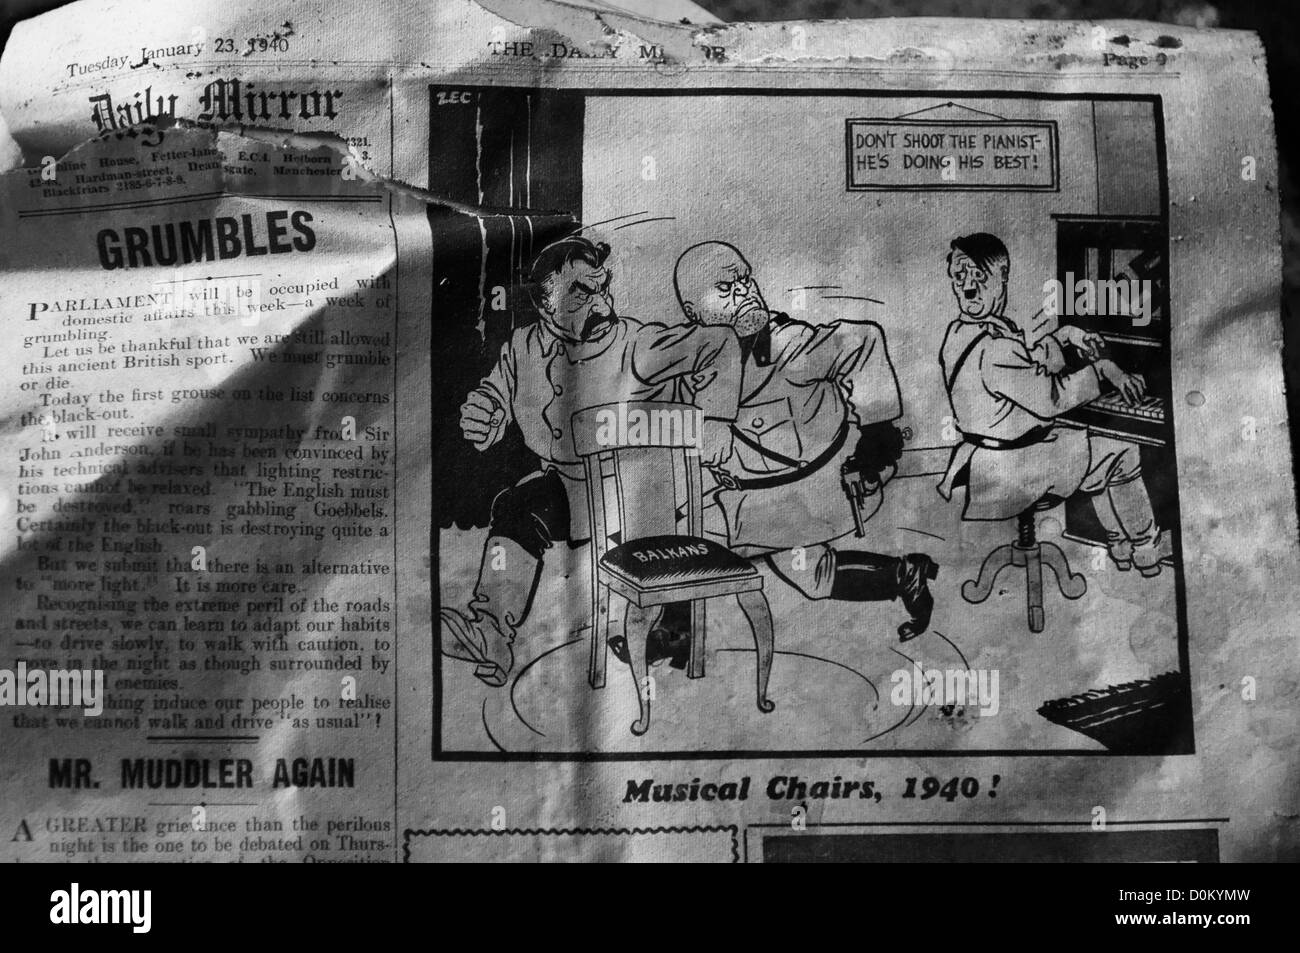 Partie d'un journal de 1940 montrant une caricature d'Adolf Hitler Banque D'Images